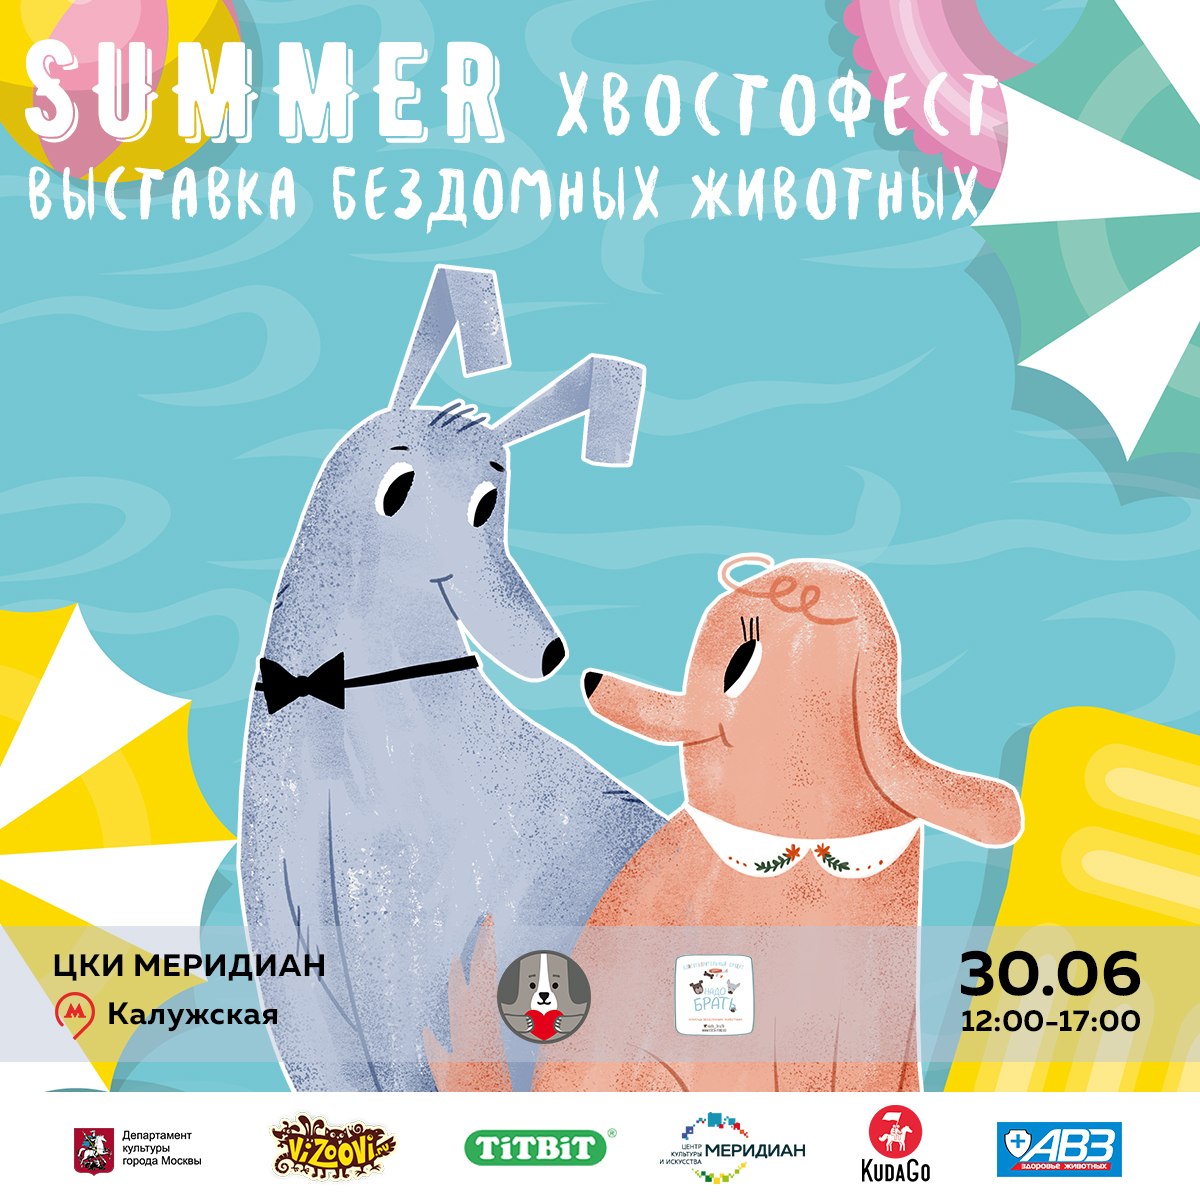 Хвостофест Summer 30.06.2018